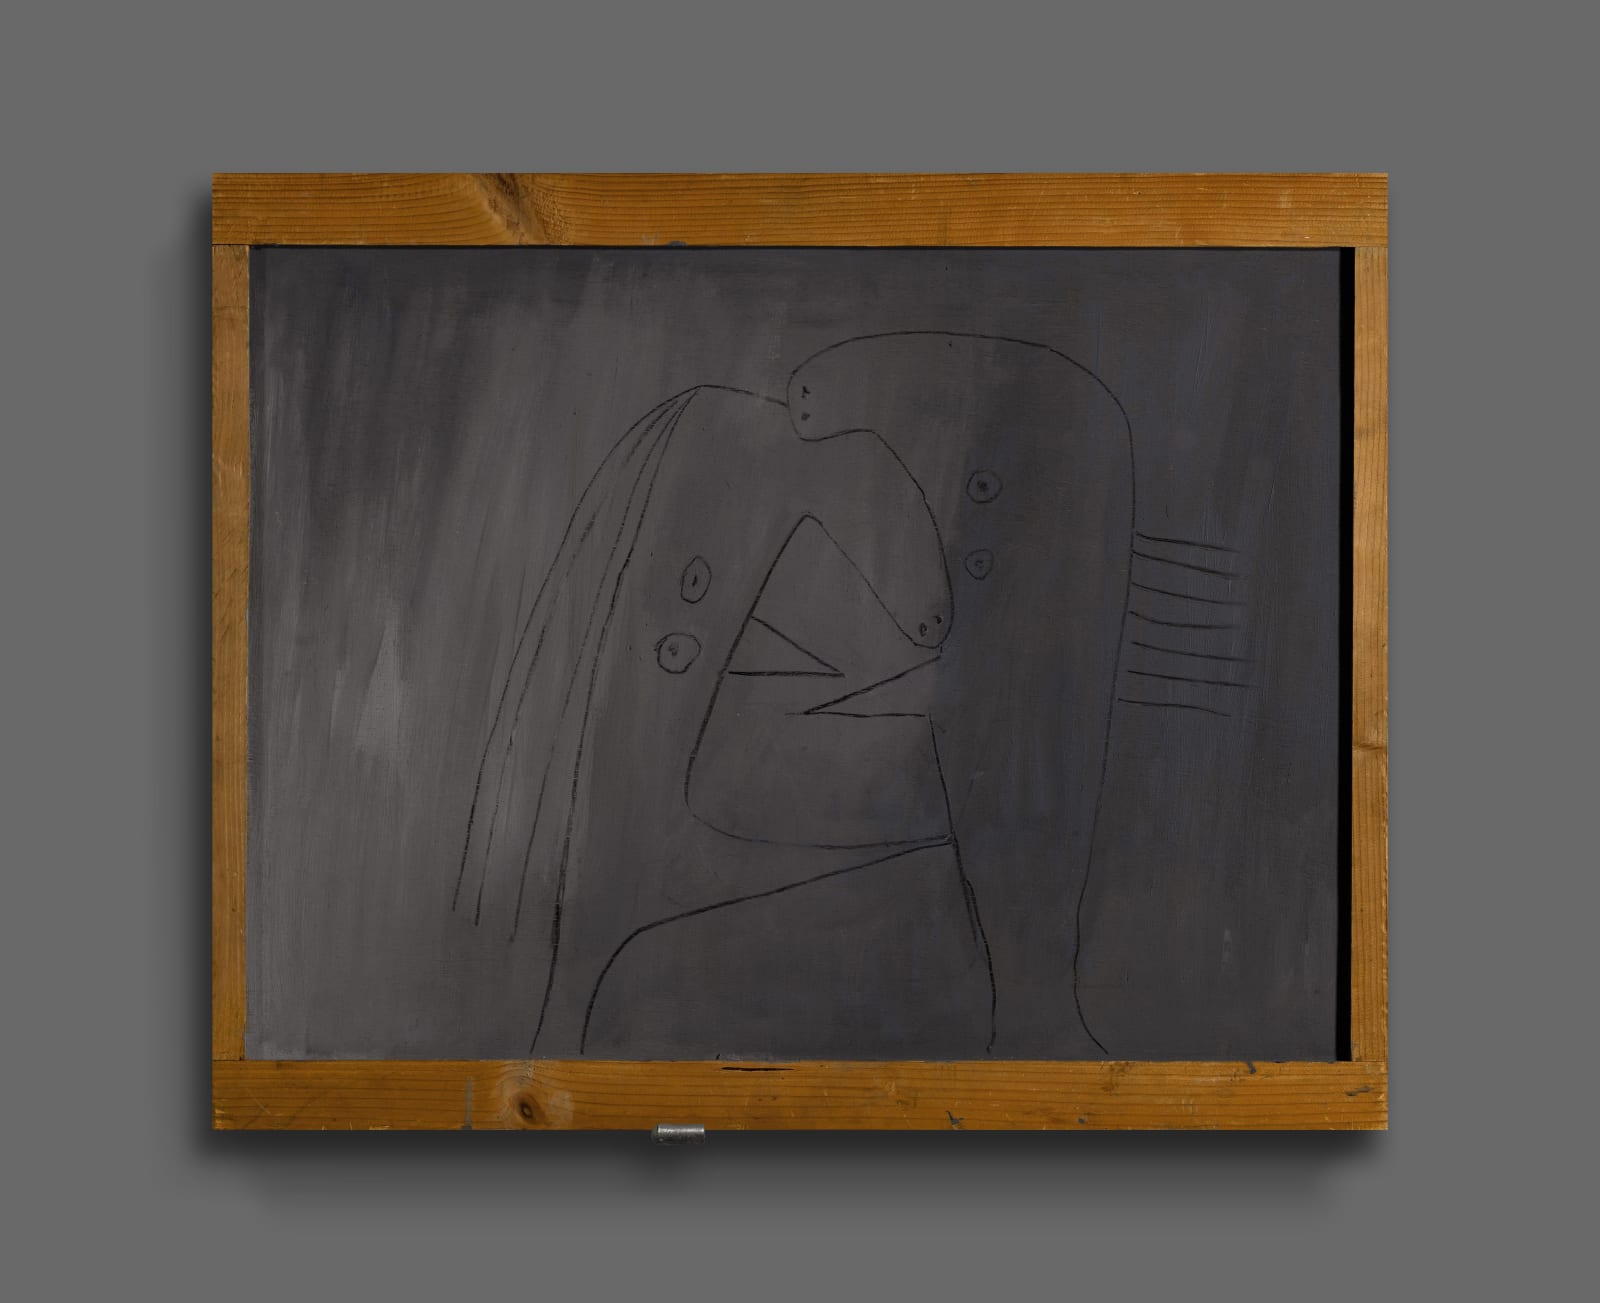 Pablo Picasso, Le Baiser, 1930